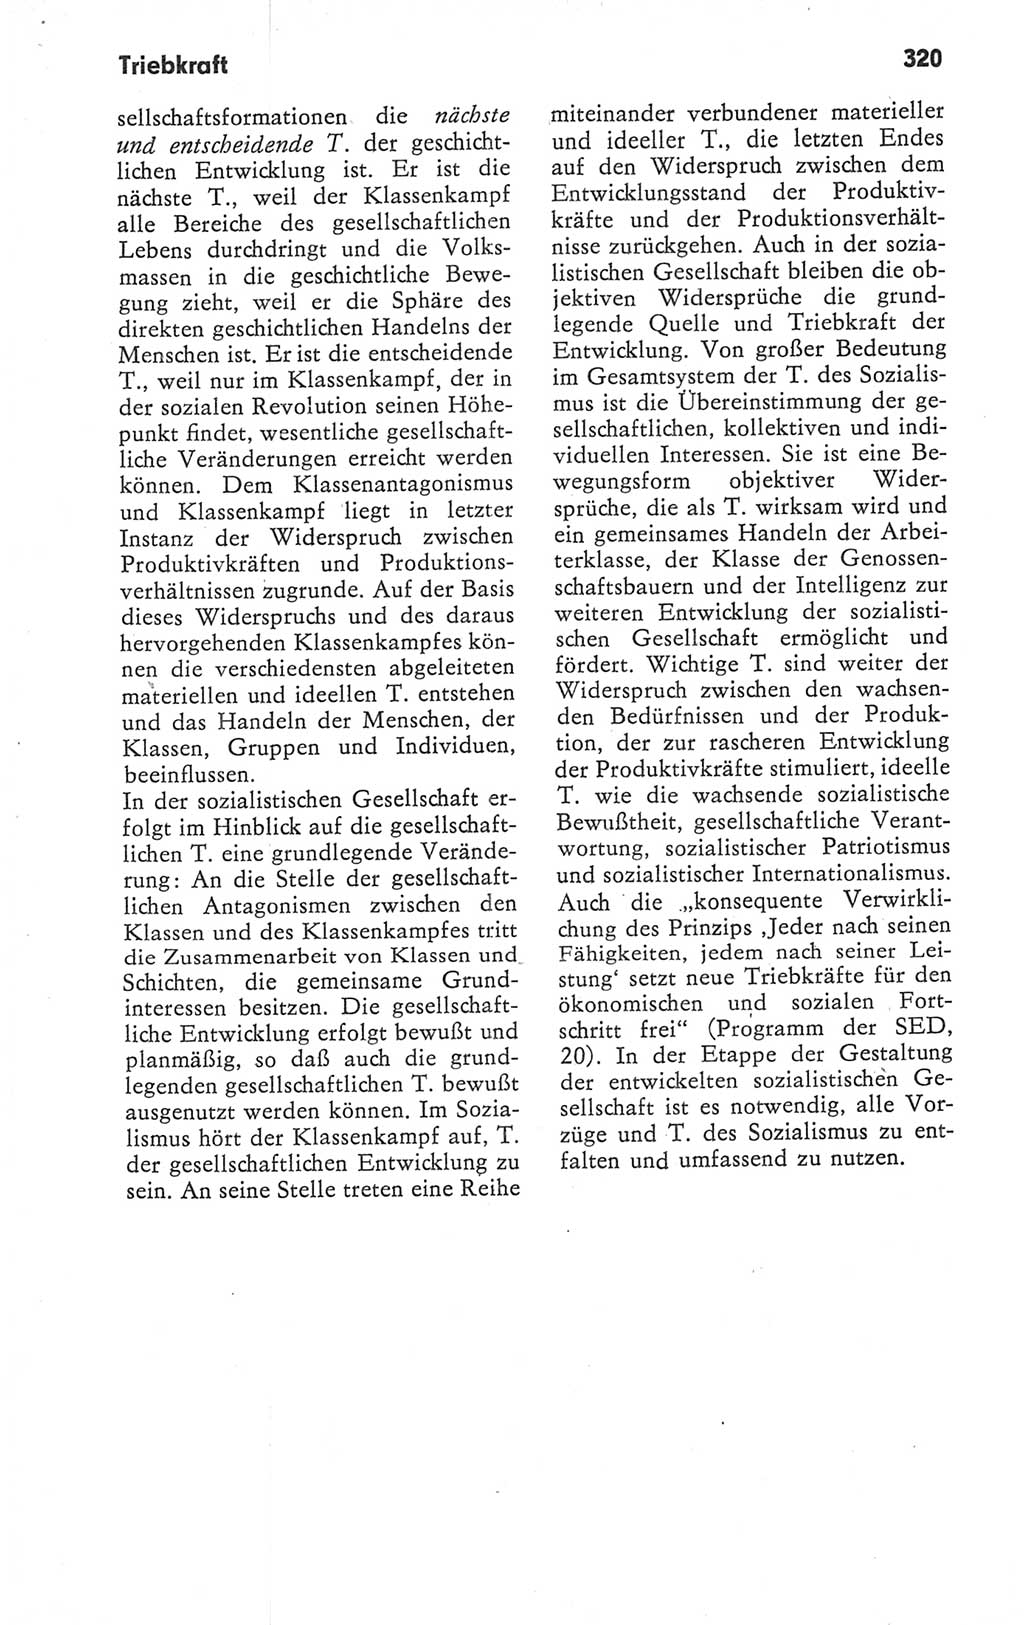 Kleines Wörterbuch der marxistisch-leninistischen Philosophie [Deutsche Demokratische Republik (DDR)] 1979, Seite 320 (Kl. Wb. ML Phil. DDR 1979, S. 320)